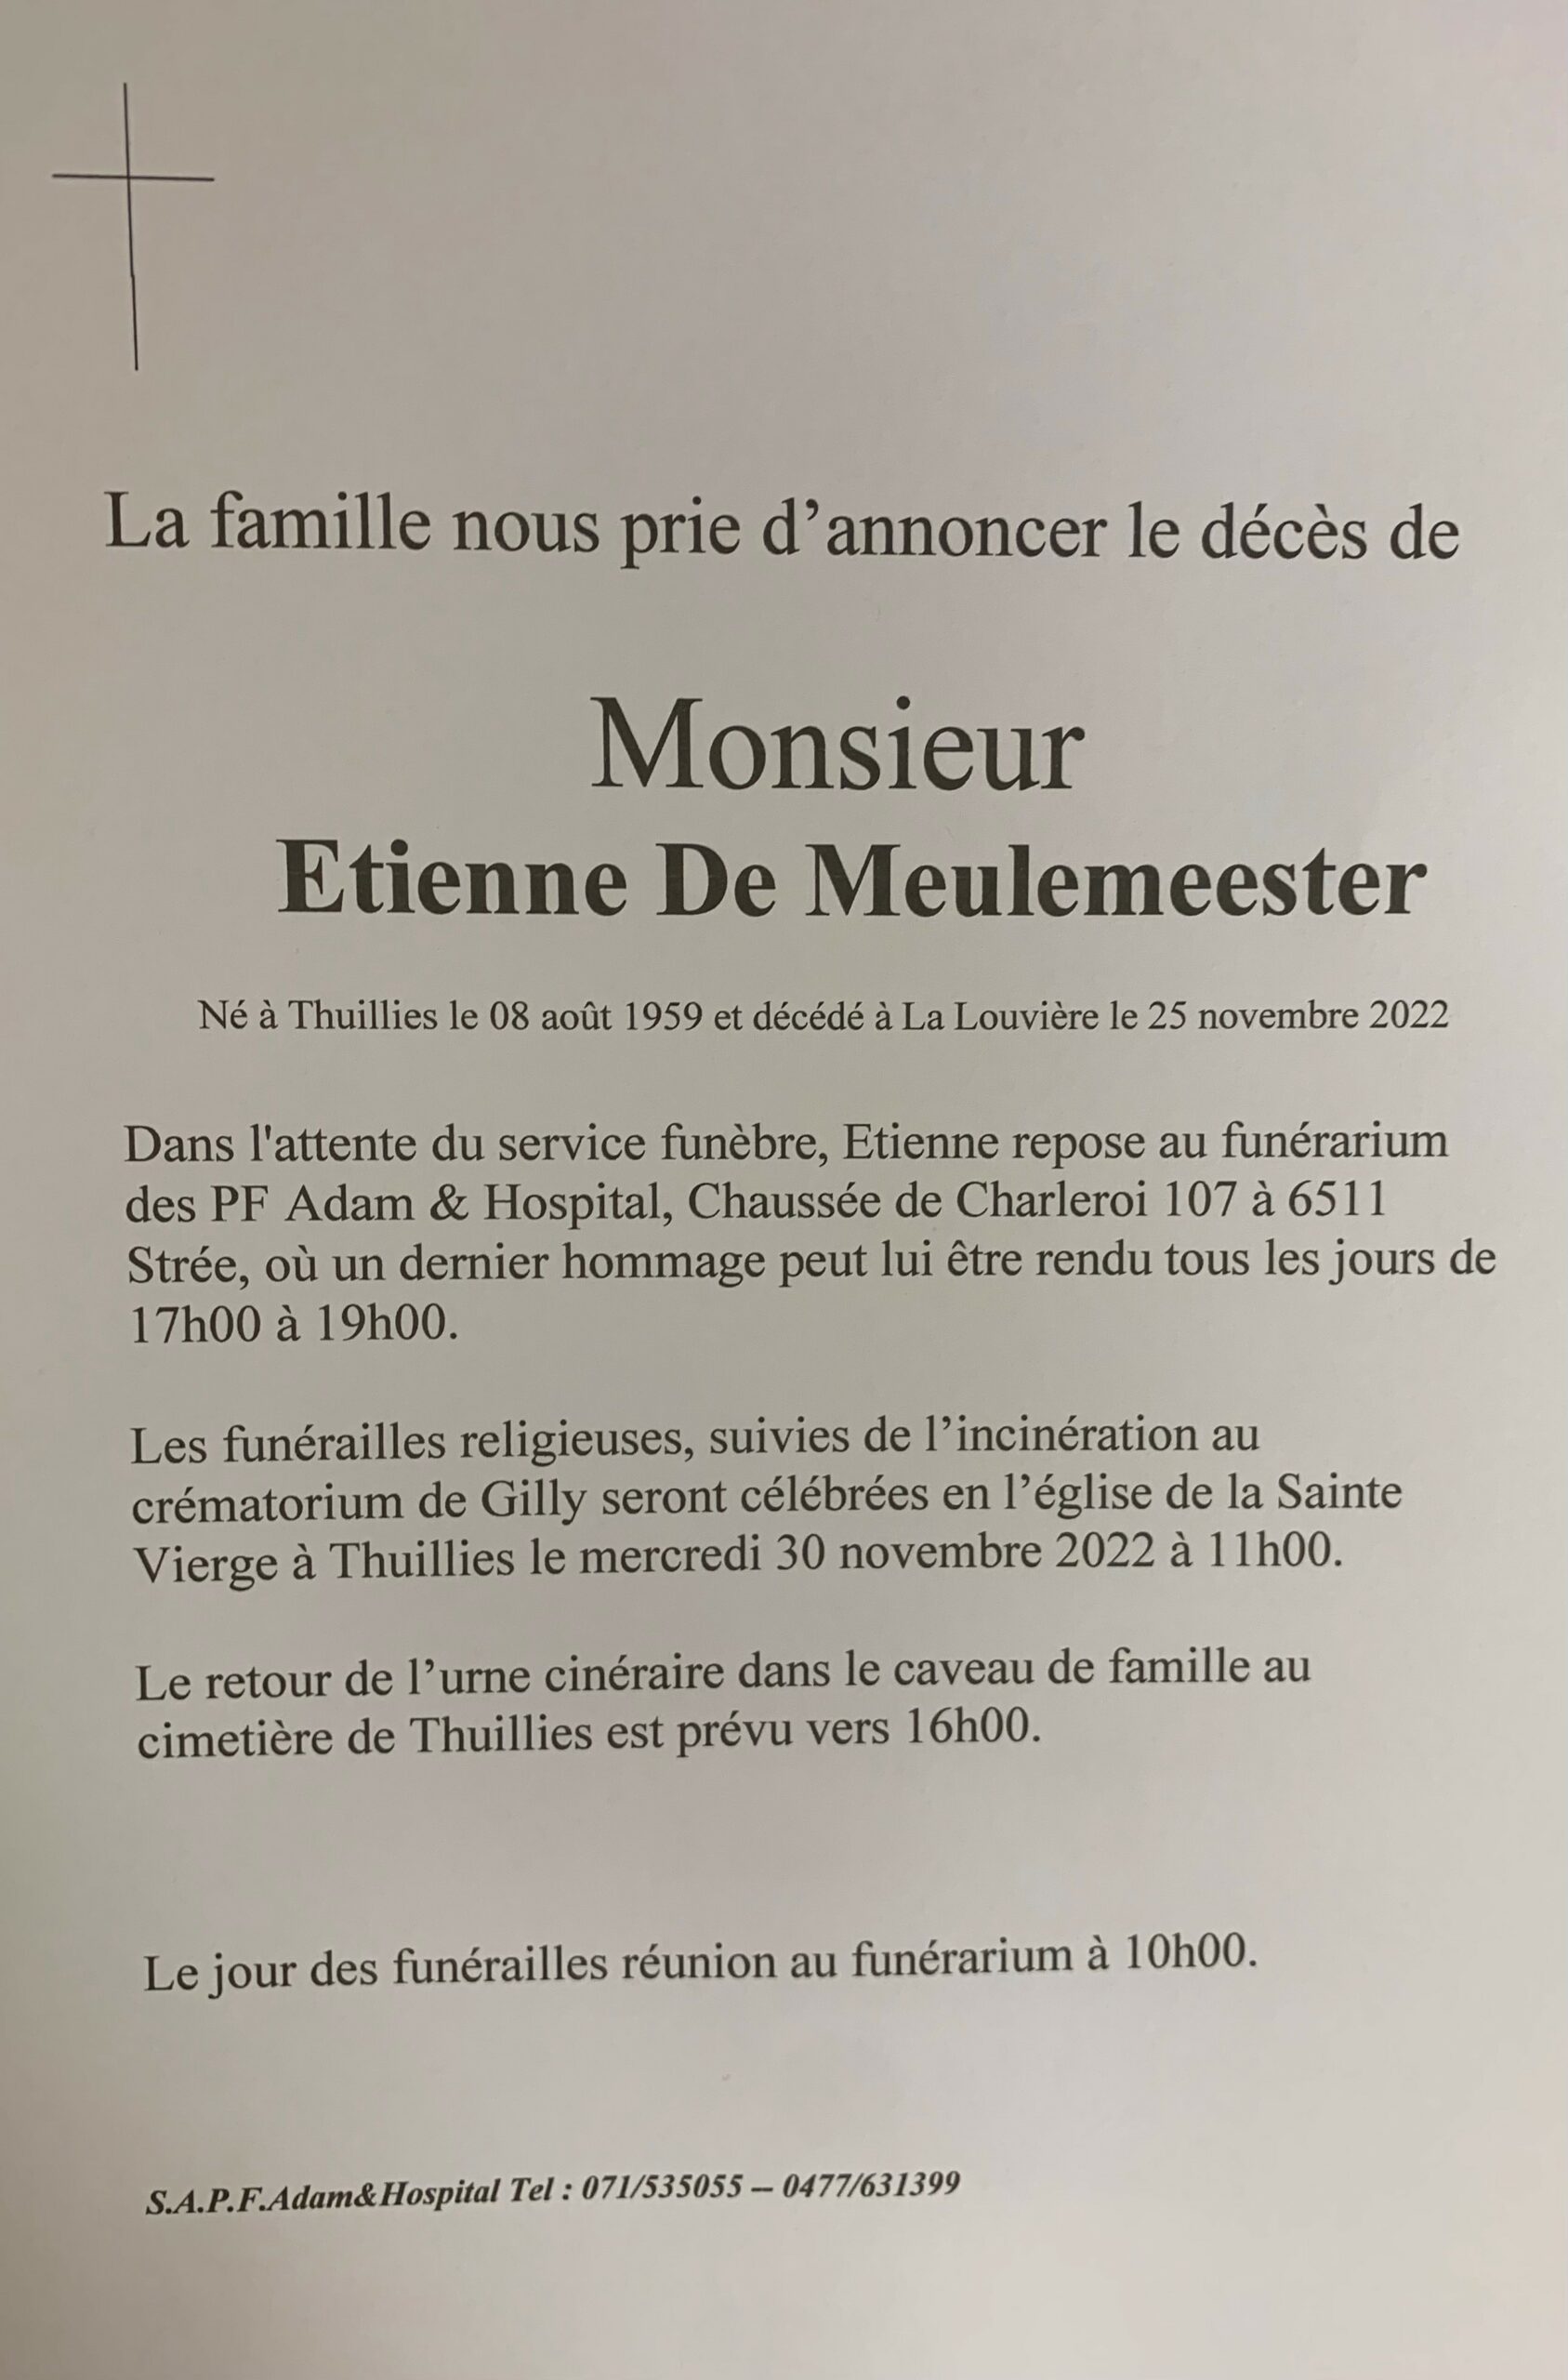 Monsieur Etienne De Meulemeester scaled | Funérailles Adam Hospital